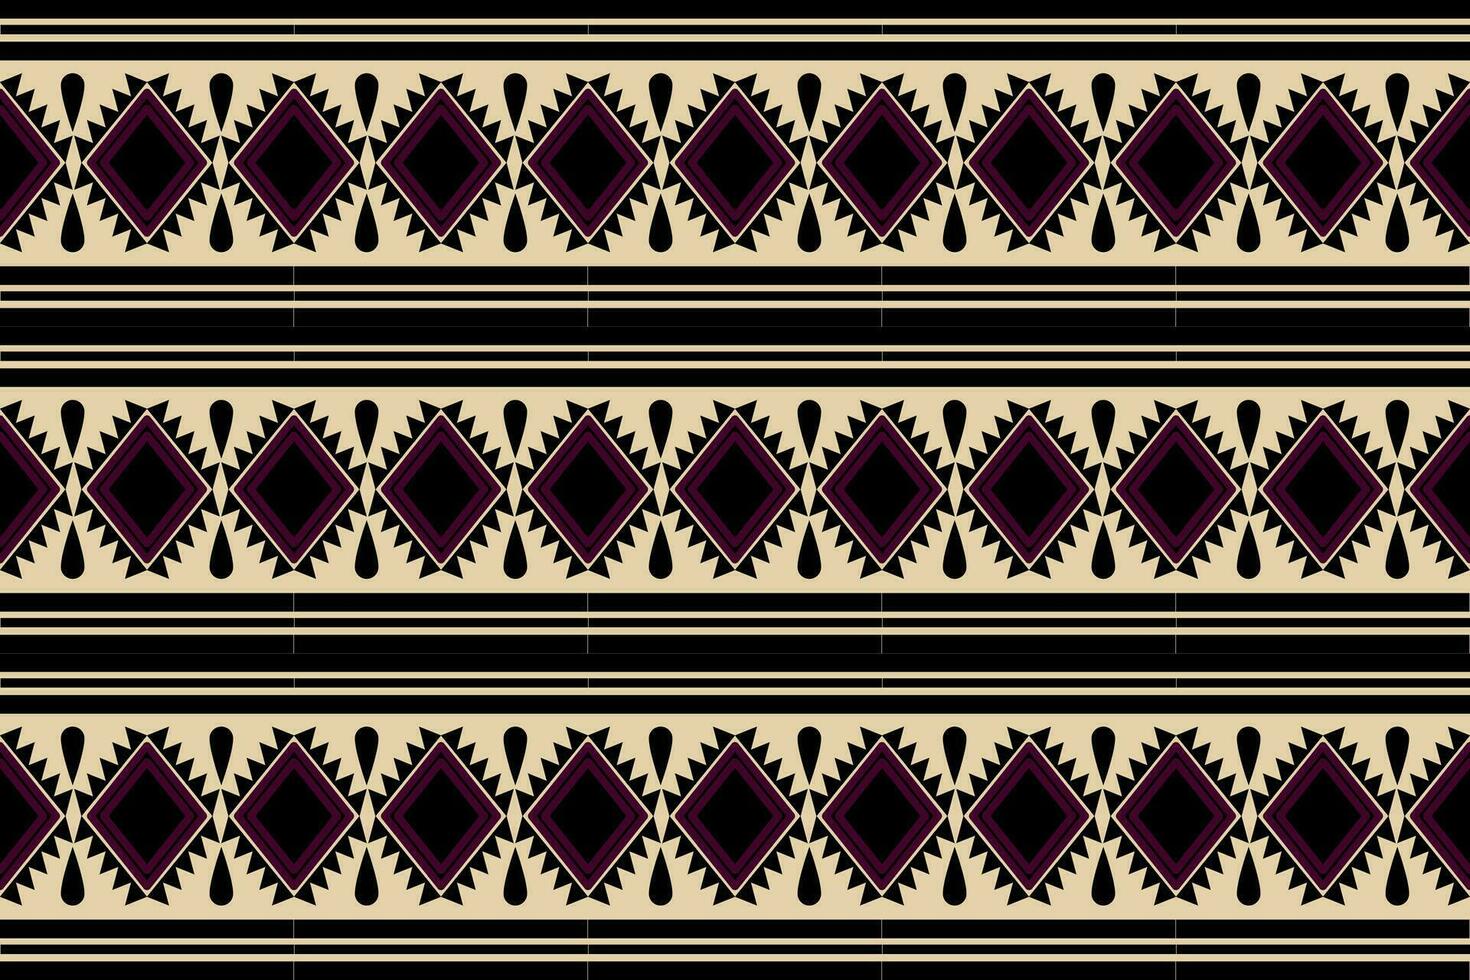 geometriska etniska mönster traditionell design för bakgrund, matta, tapeter, kläder, omslag, batik, tyg, sarong, vektor illustration broderi stil.